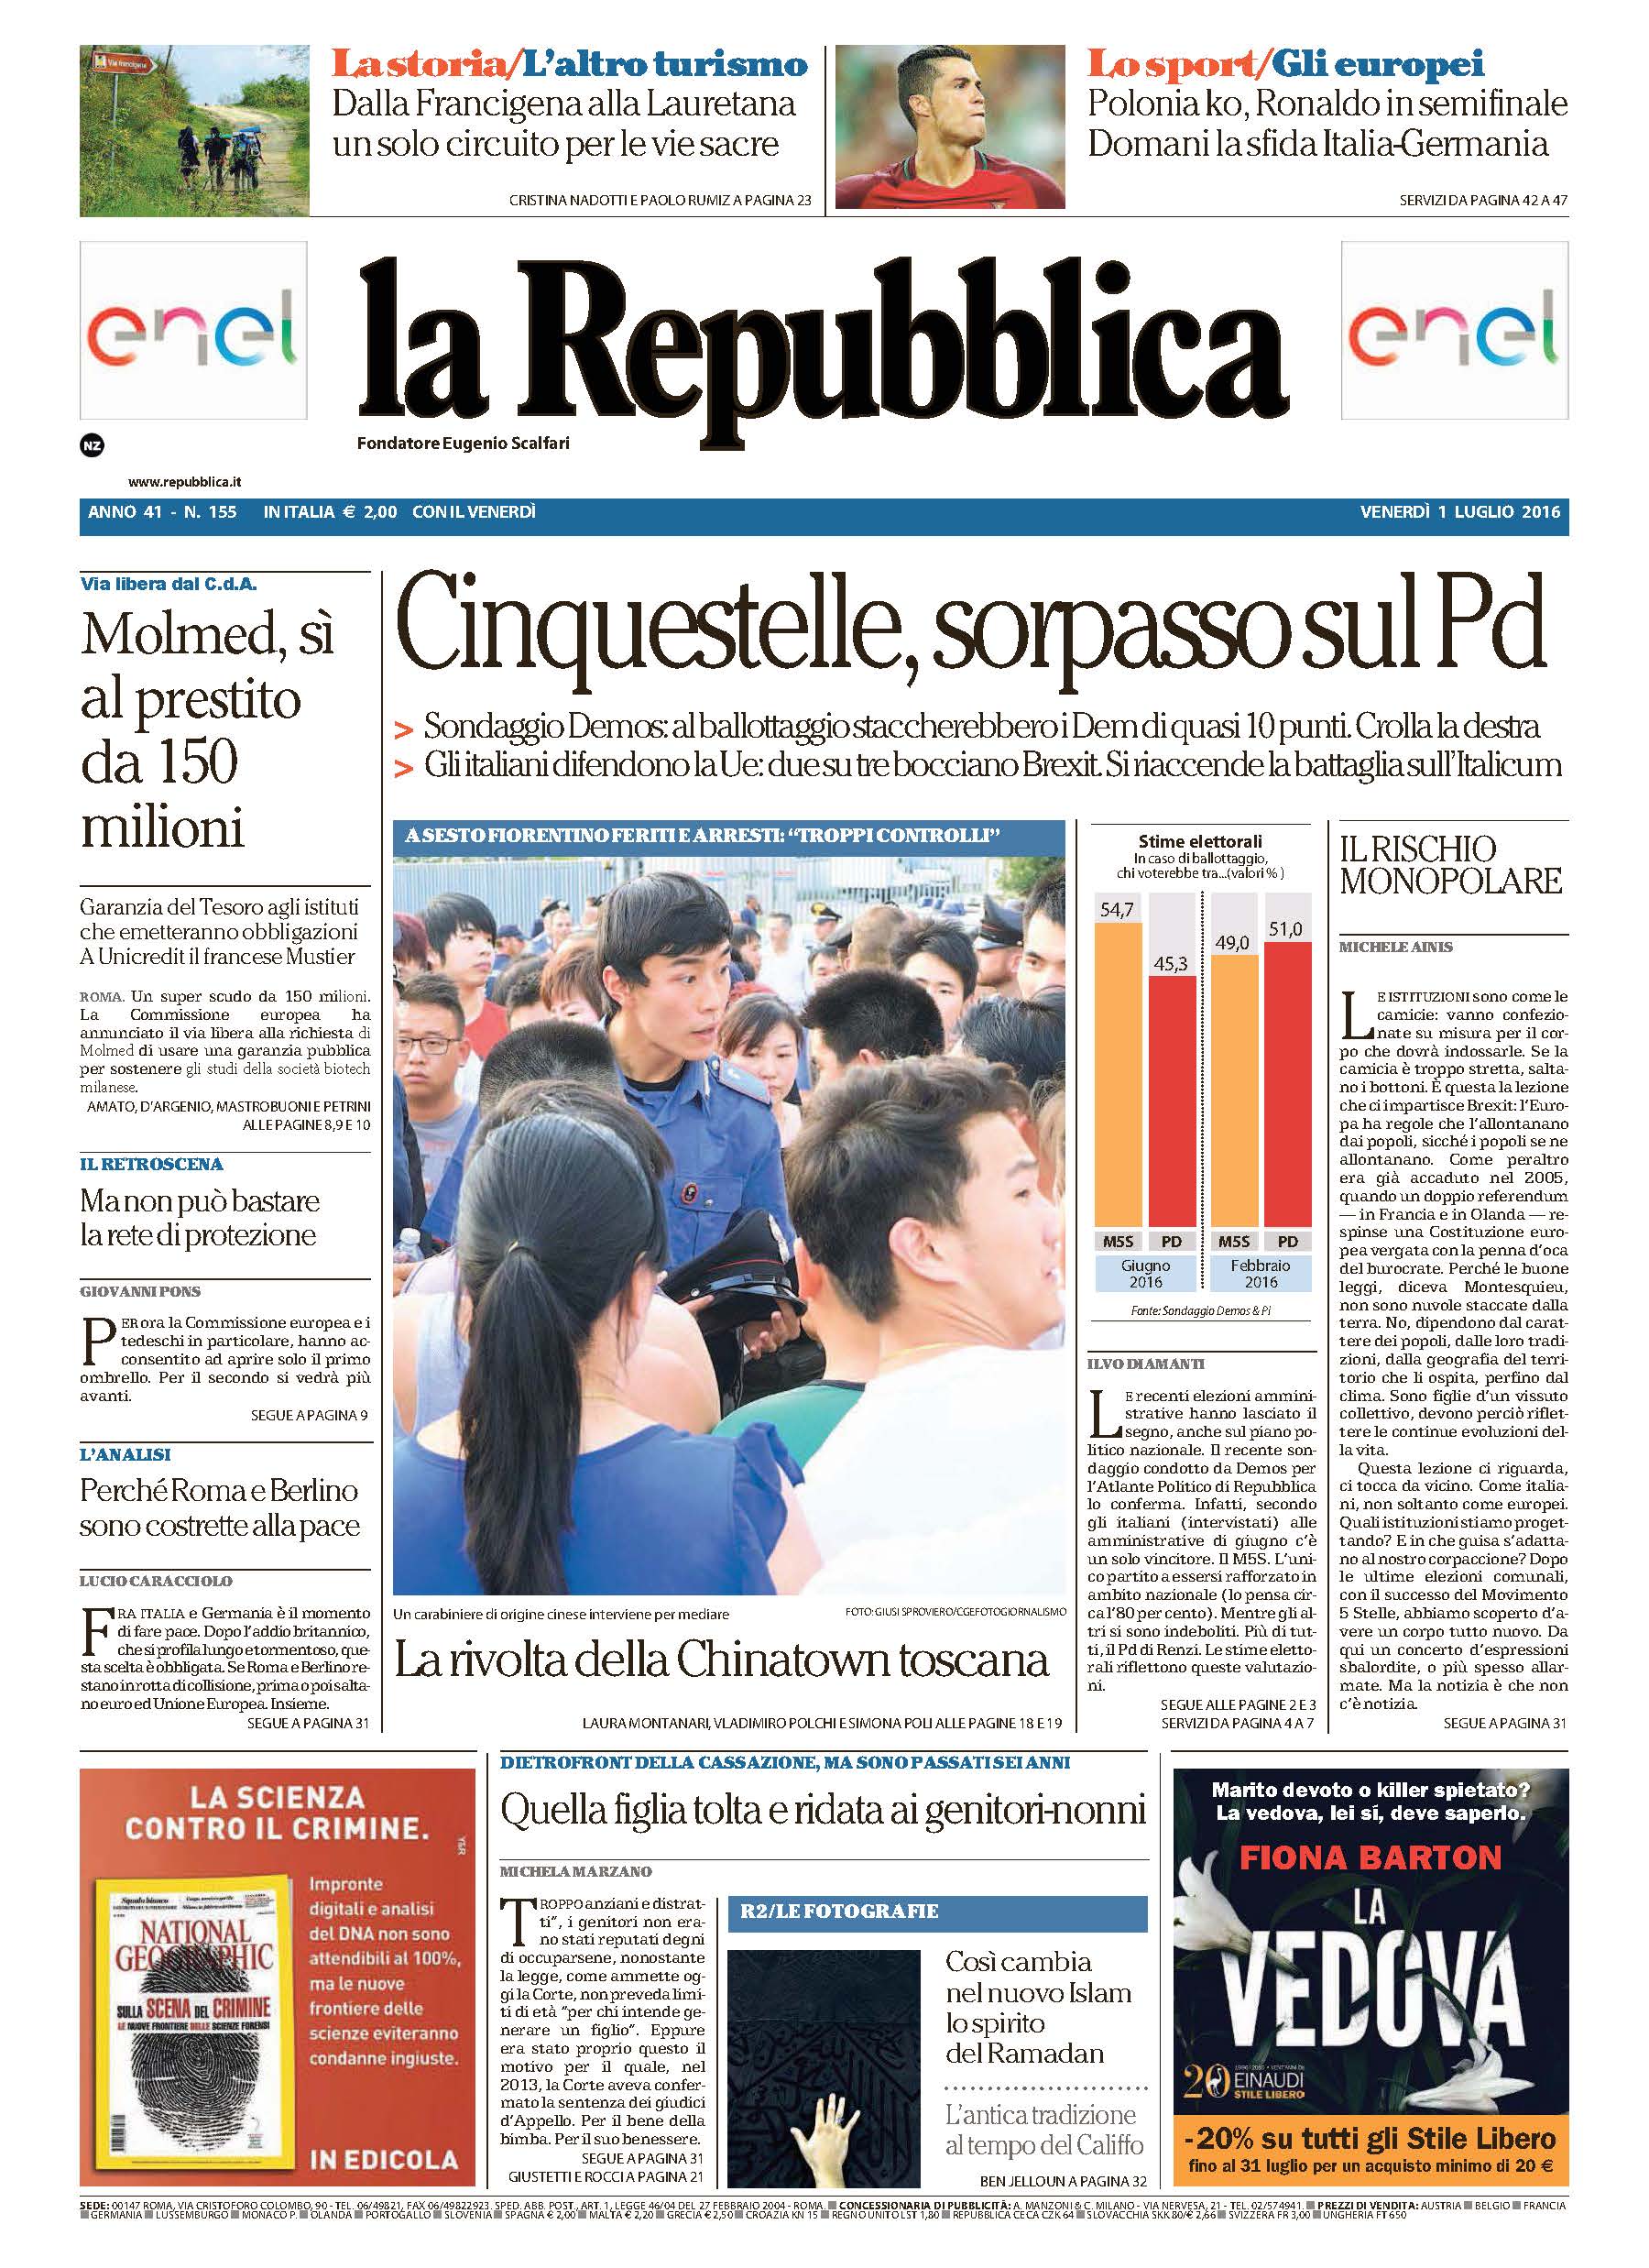 Pagine da La Repubblica - 1 Luglio 2016.jpg